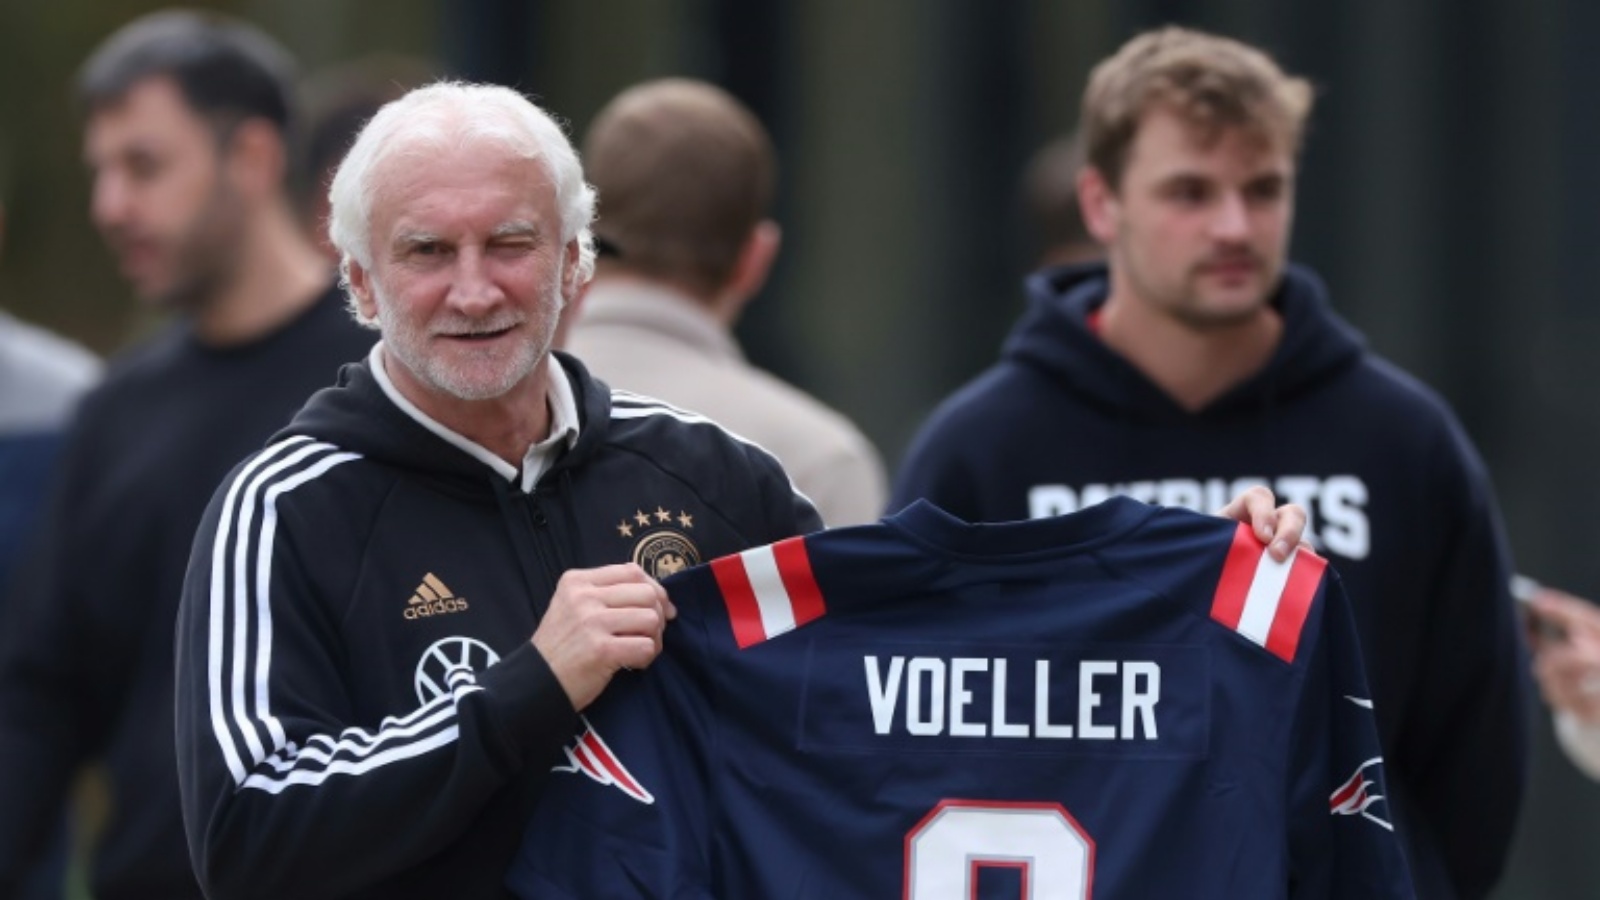 رودي فولر يرفع قميصاً يحمل اسمه خلال تمارين المنتخب الألماني لكرة القدم. فوكسبورو، ماساشوسيتس، في 10 تشرين الأول (أكتوبر) 2023